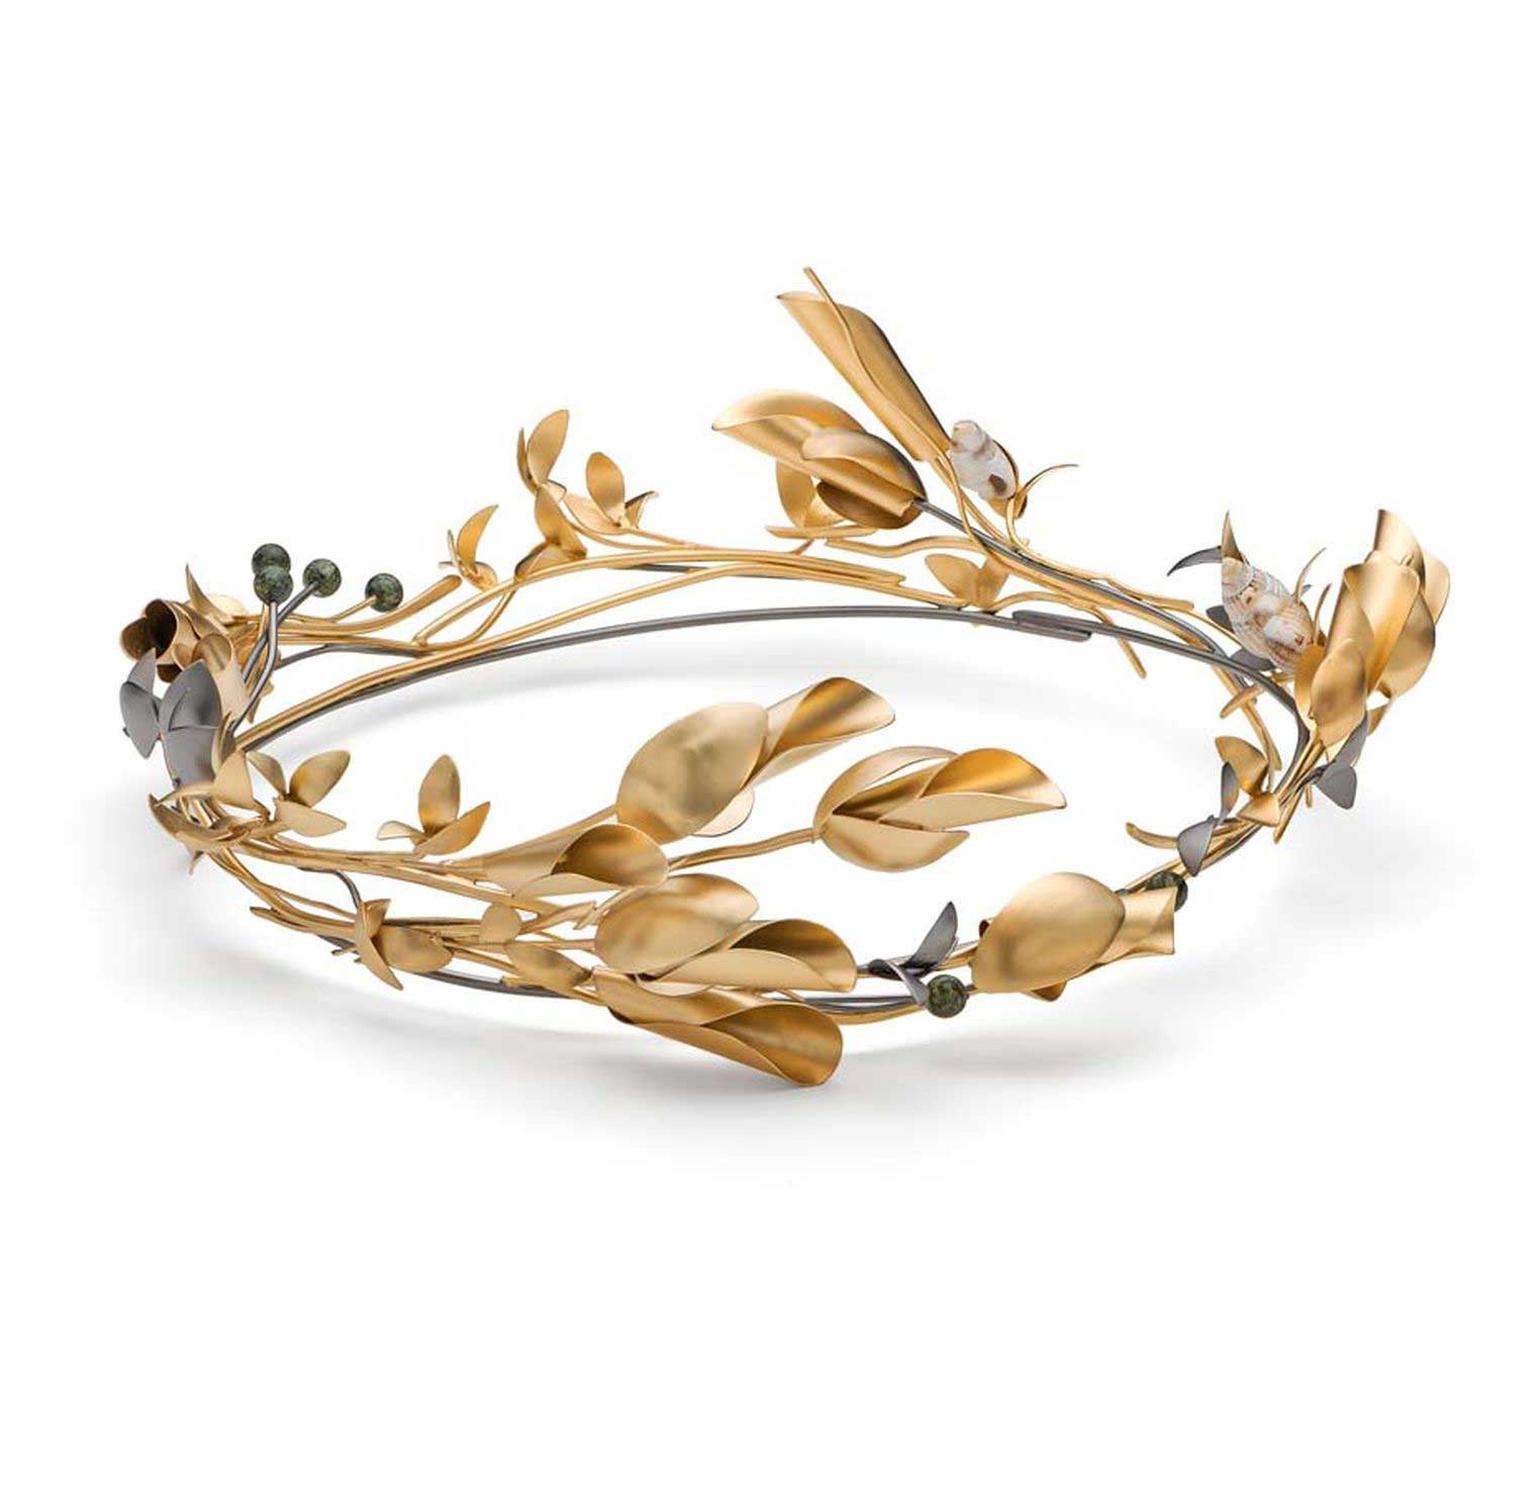 Mirri Damer gold leaf tiara